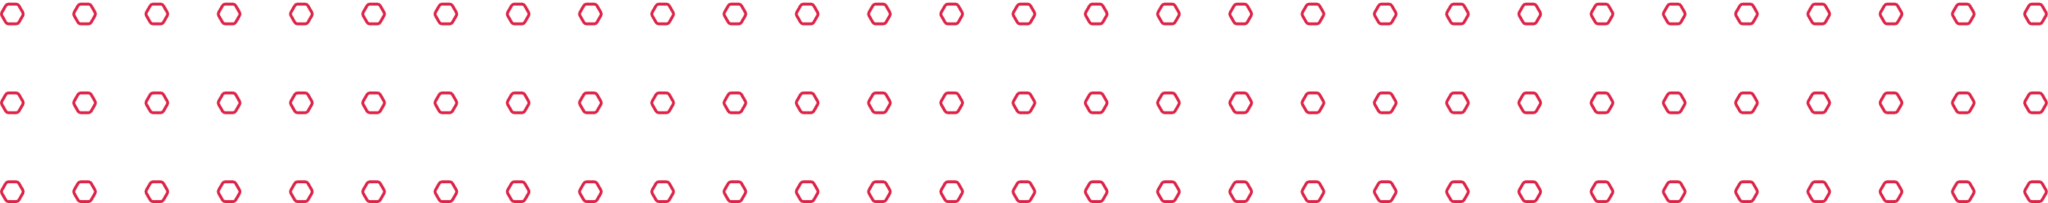 Brinicombe B2B Hexagons